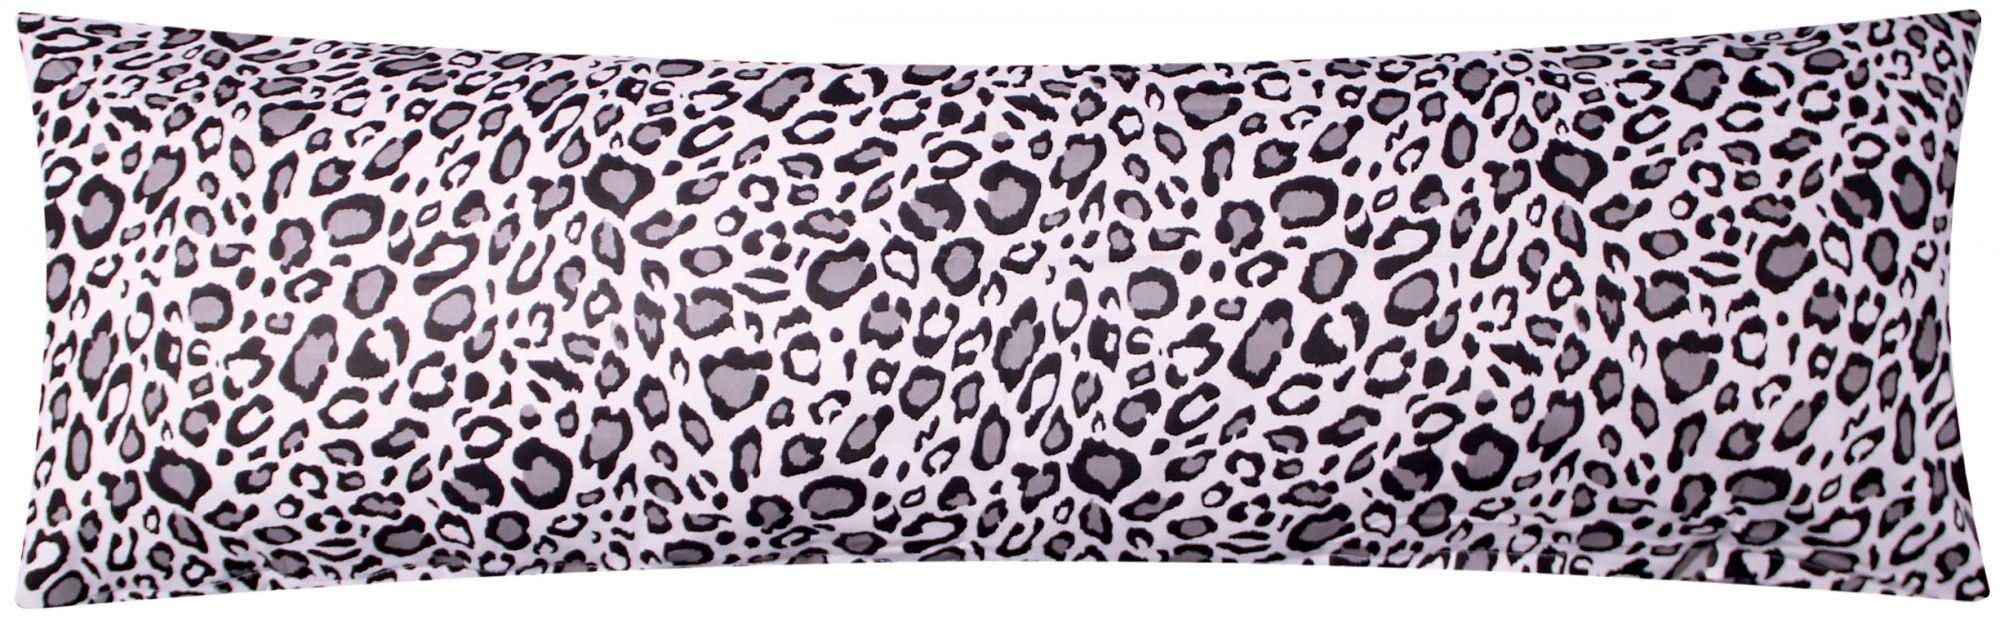 Baumwoll Renforcé Seitenschläferkissen Bezug 40x145cm - Felloptik, Leoparden Muster in schwarz und weiß - 100% Baumwolle Stillkissenbezug (370-1)